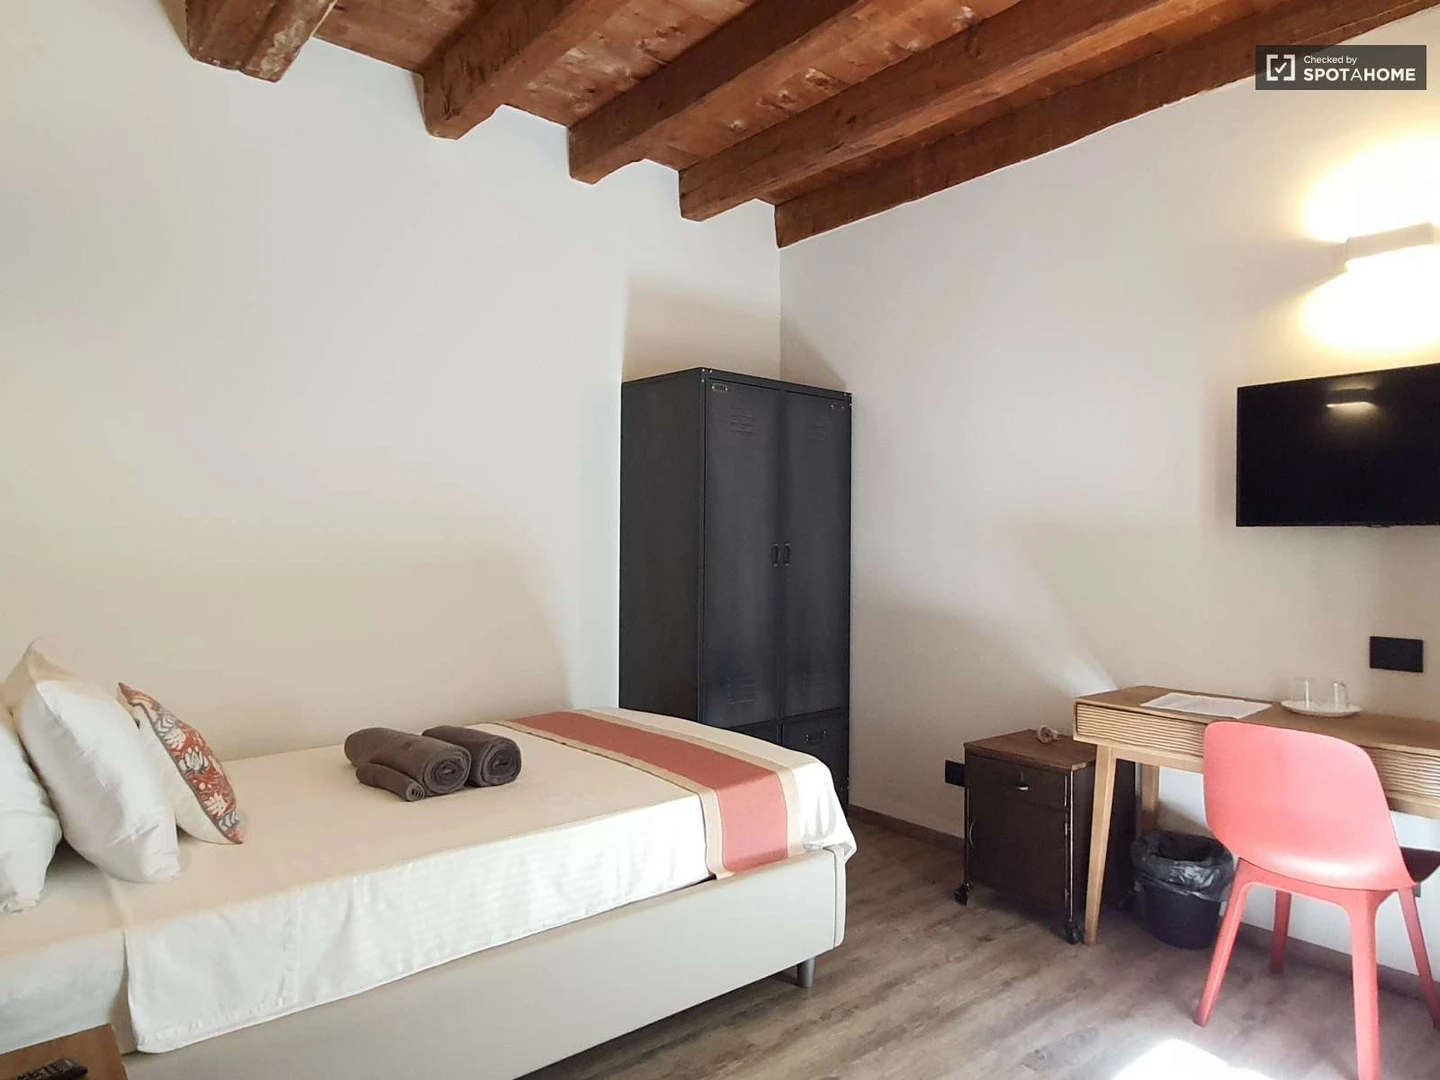 Alquiler de habitaciones por meses en Brescia